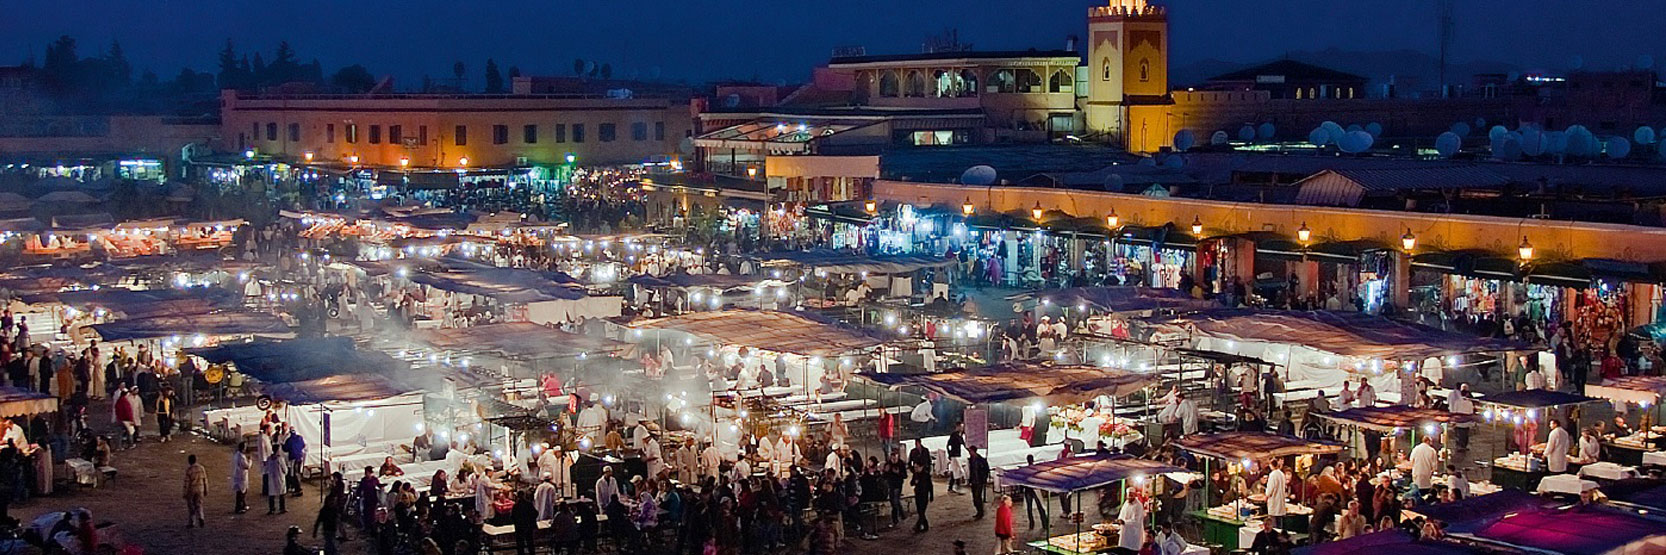 أجمل مدن في المغرب بالتراث القديم والغني بالثقافات